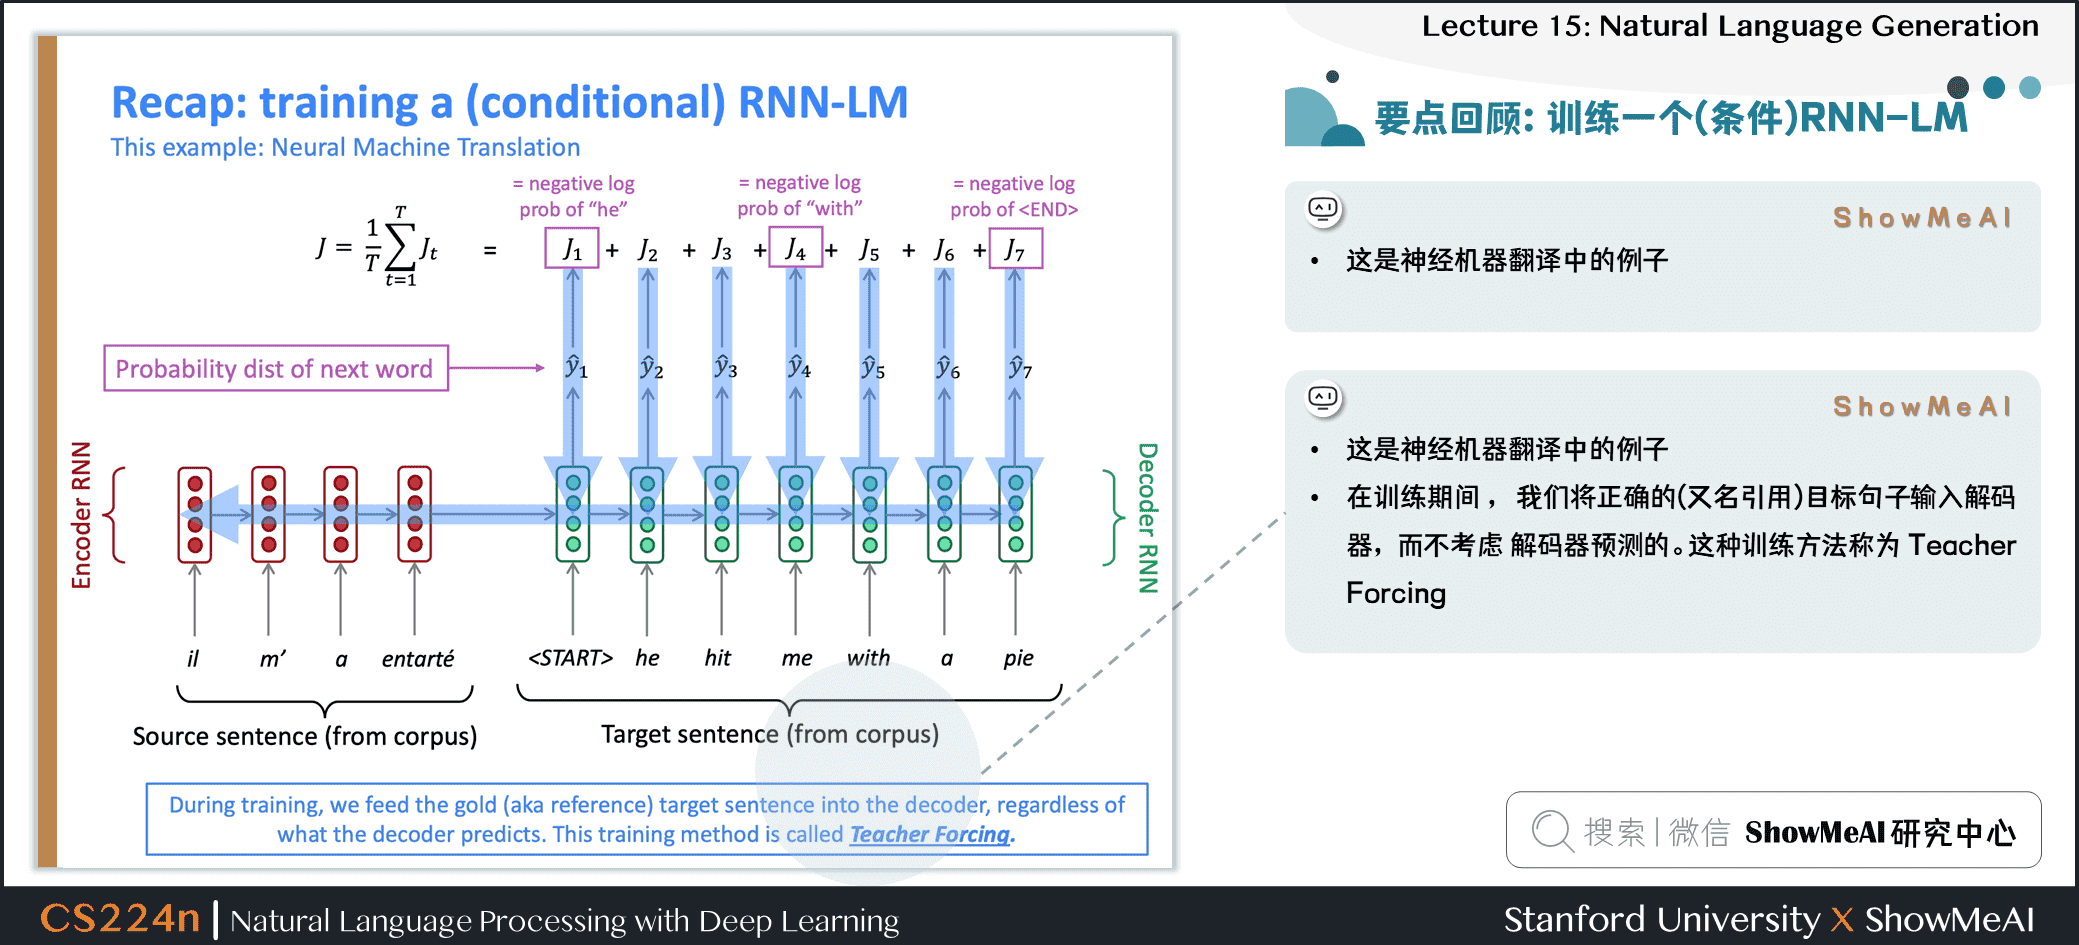 知识回顾：训练一个(条件)RNN语言模型